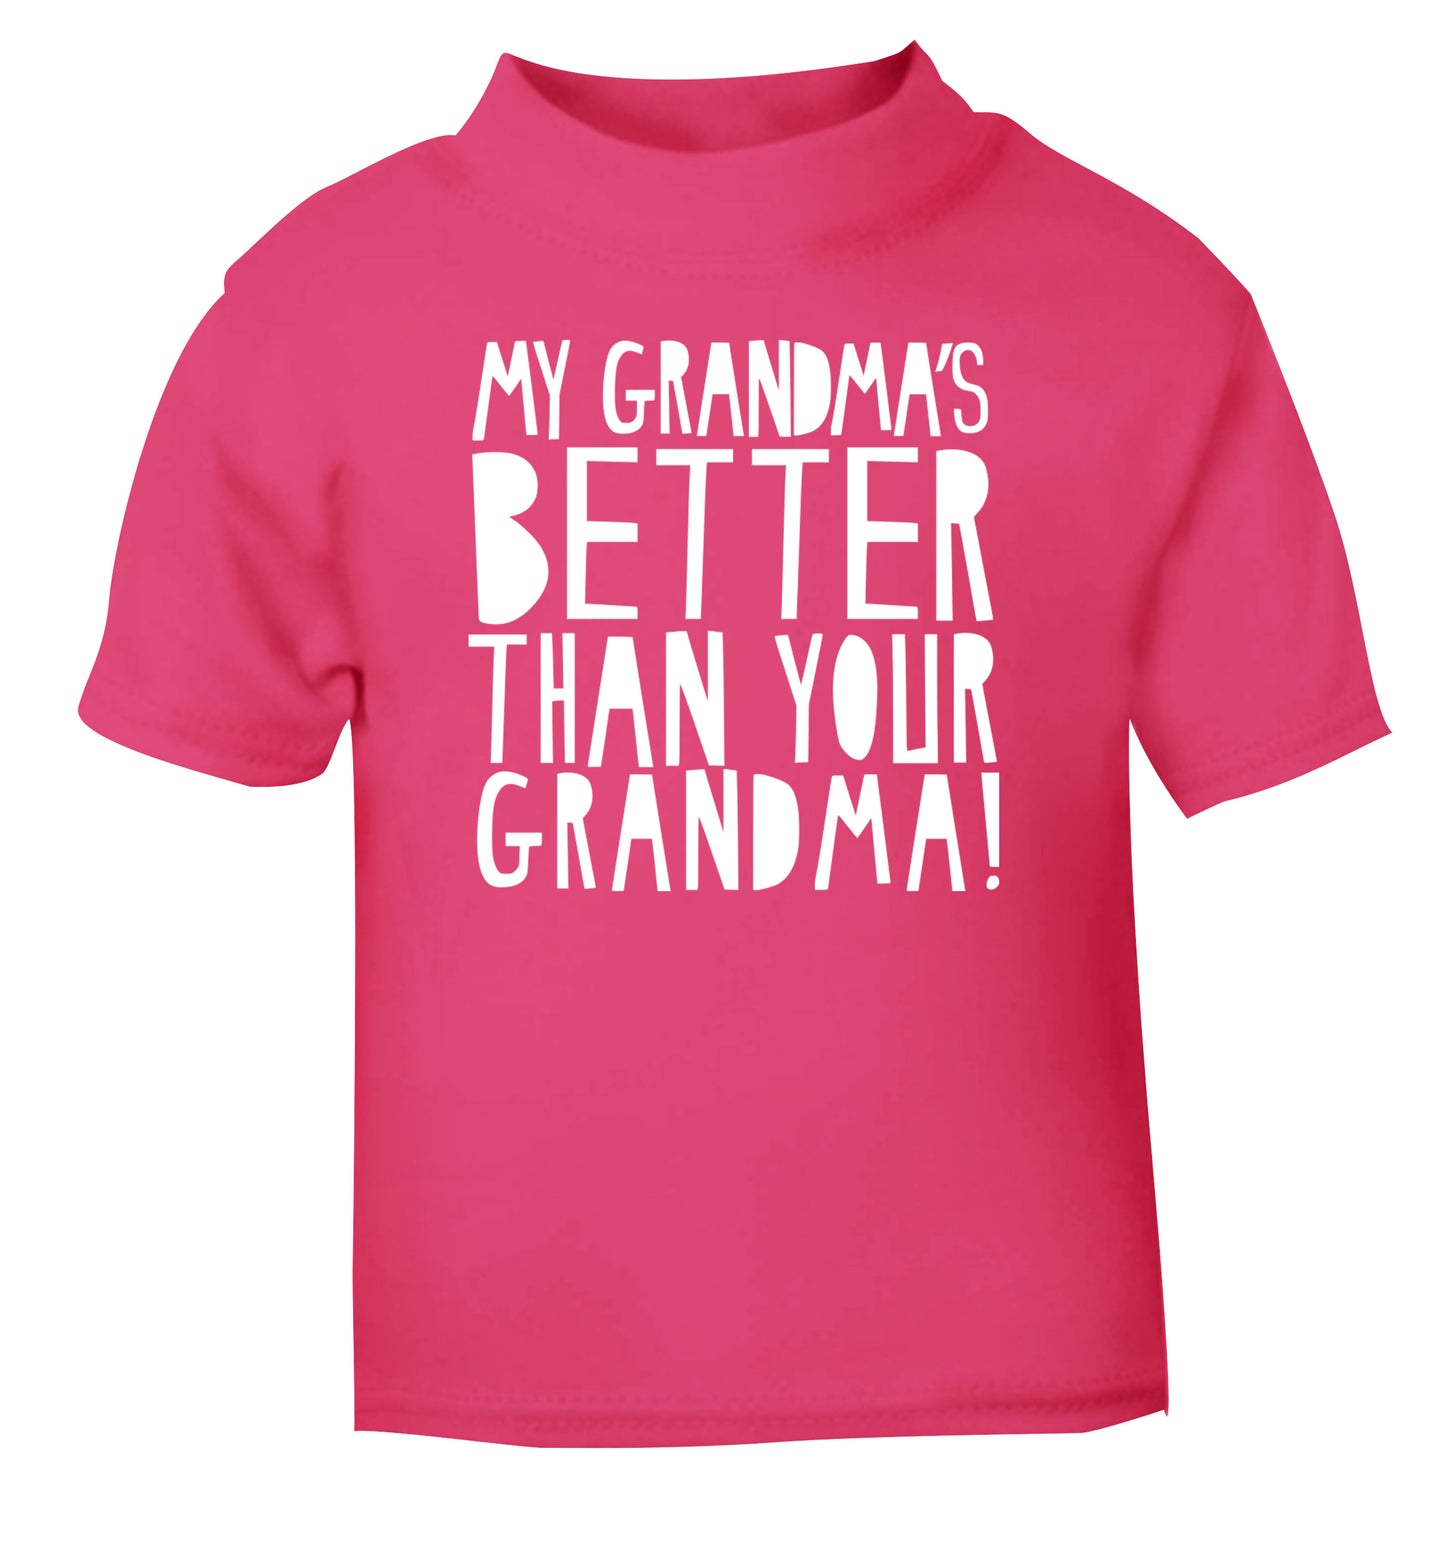 My grandma's better than your grandma pink Baby Toddler Tshirt 2 Years